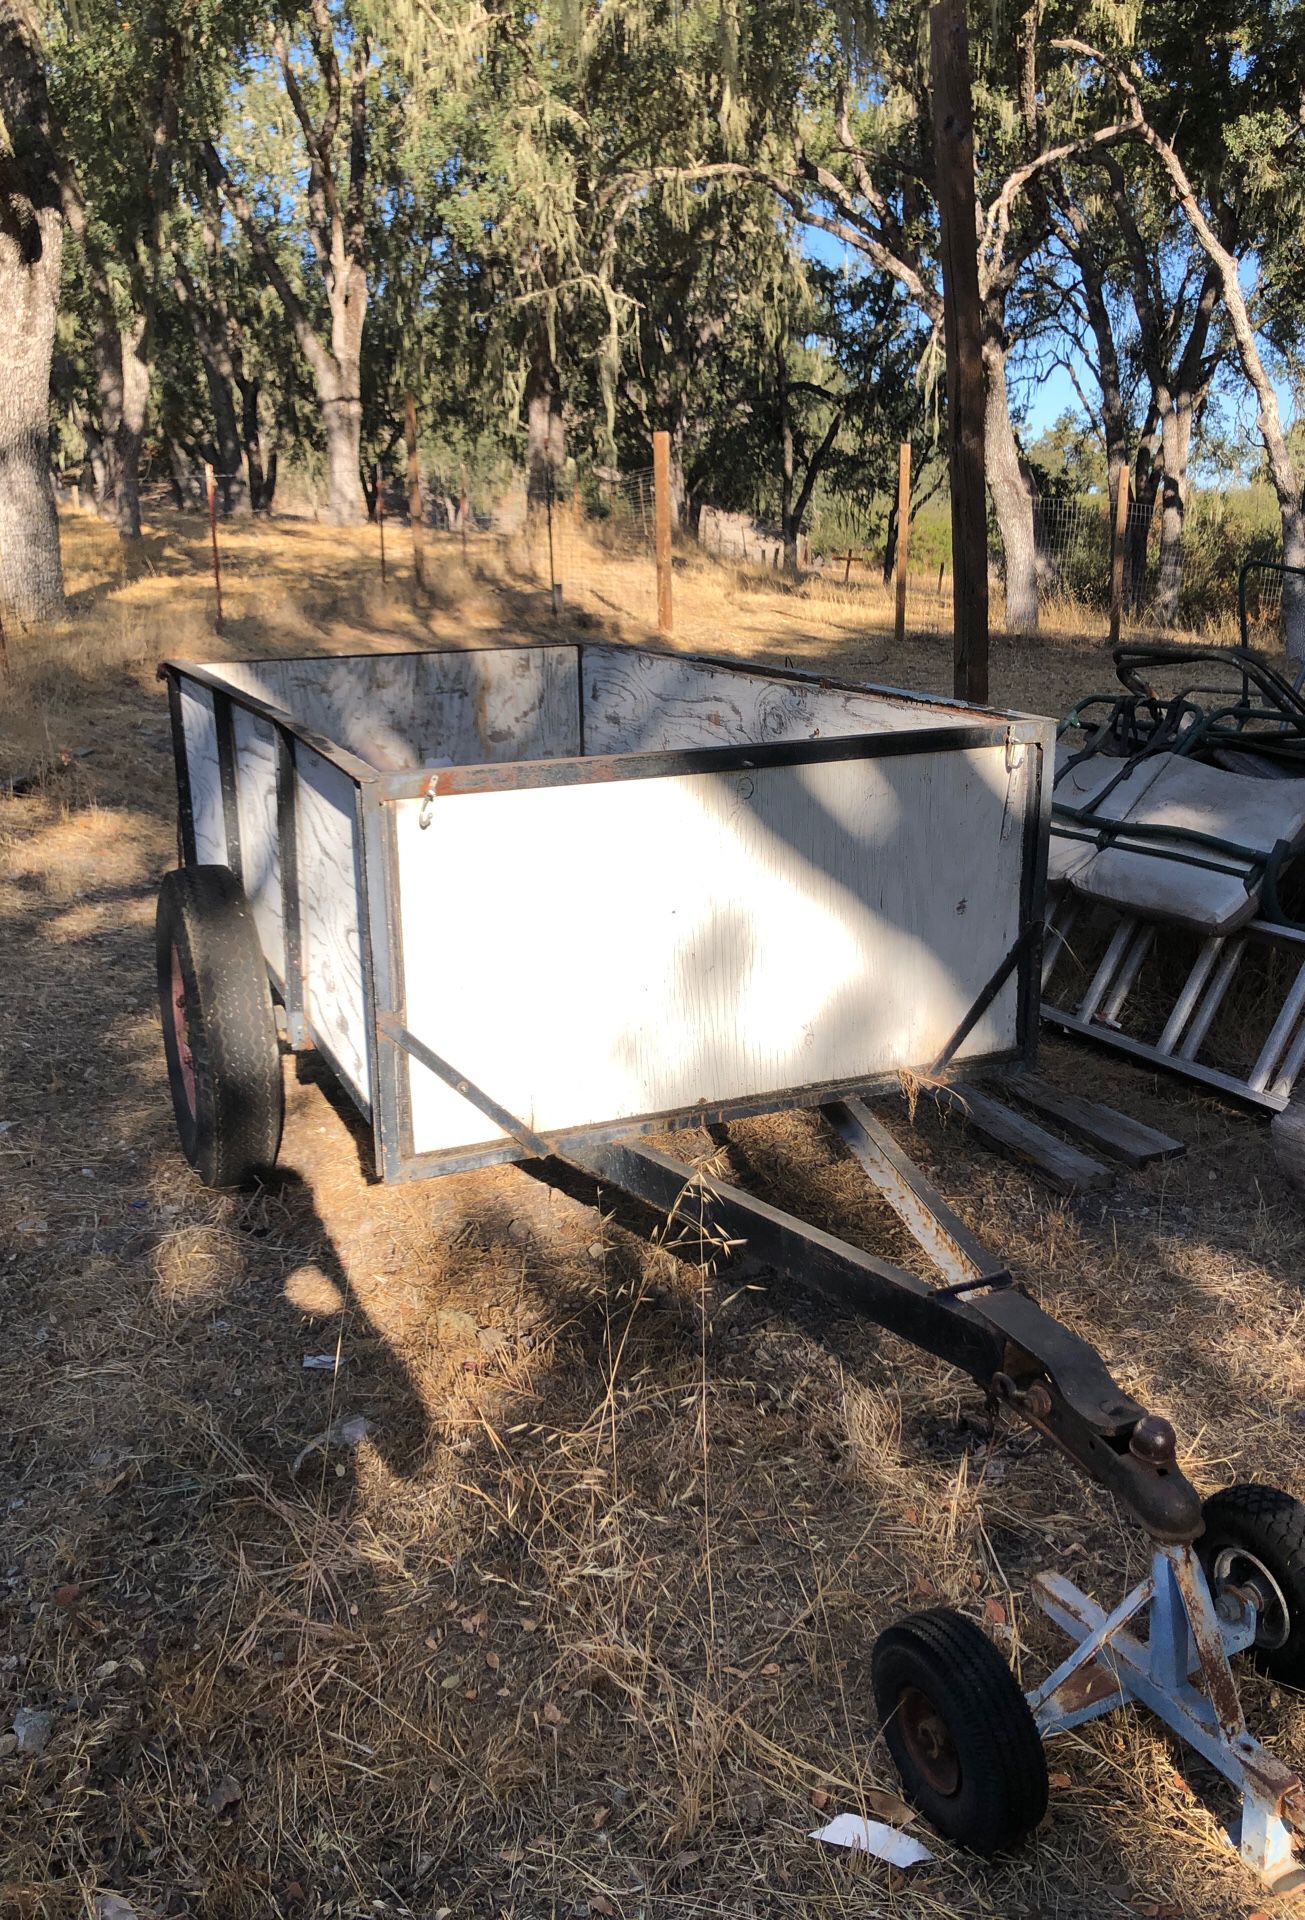 Nice trailer for farm or dump....